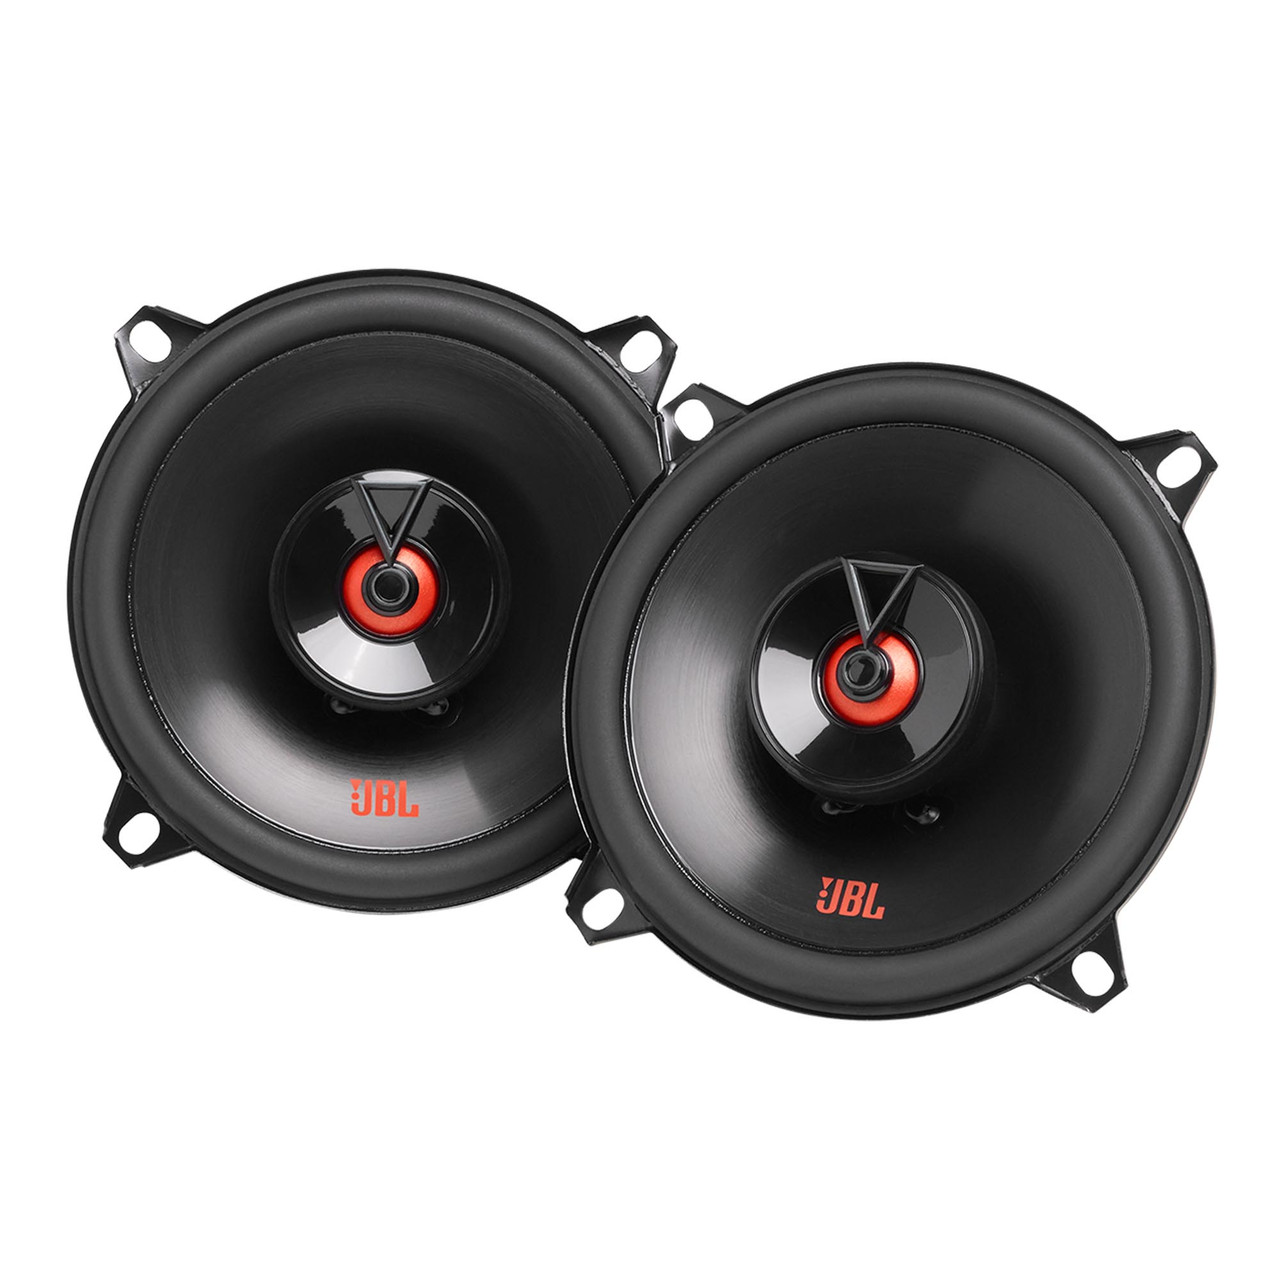 Retouch fersken Interesse JBL Club 522F 5-1/4" (130mm) Two-Way Car Speaker - Creative Audio